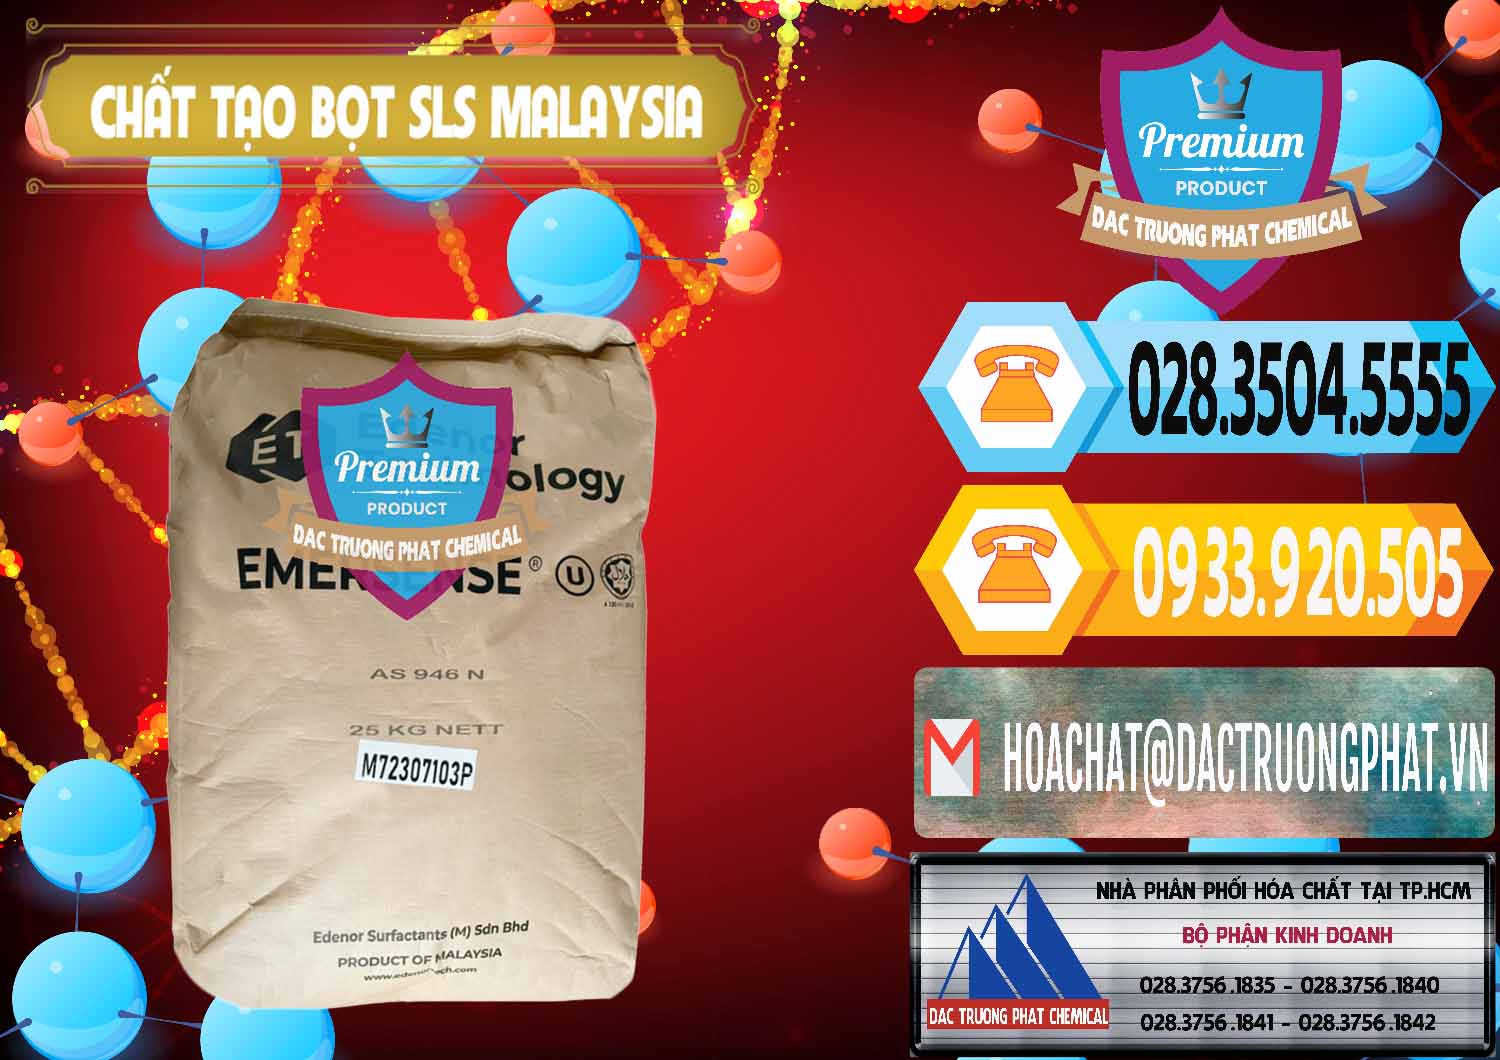 Nơi bán _ cung cấp Chất Tạo Bọt SLS Emersense Mã Lai Malaysia - 0381 - Công ty chuyên cung cấp và nhập khẩu hóa chất tại TP.HCM - hoachattayrua.net